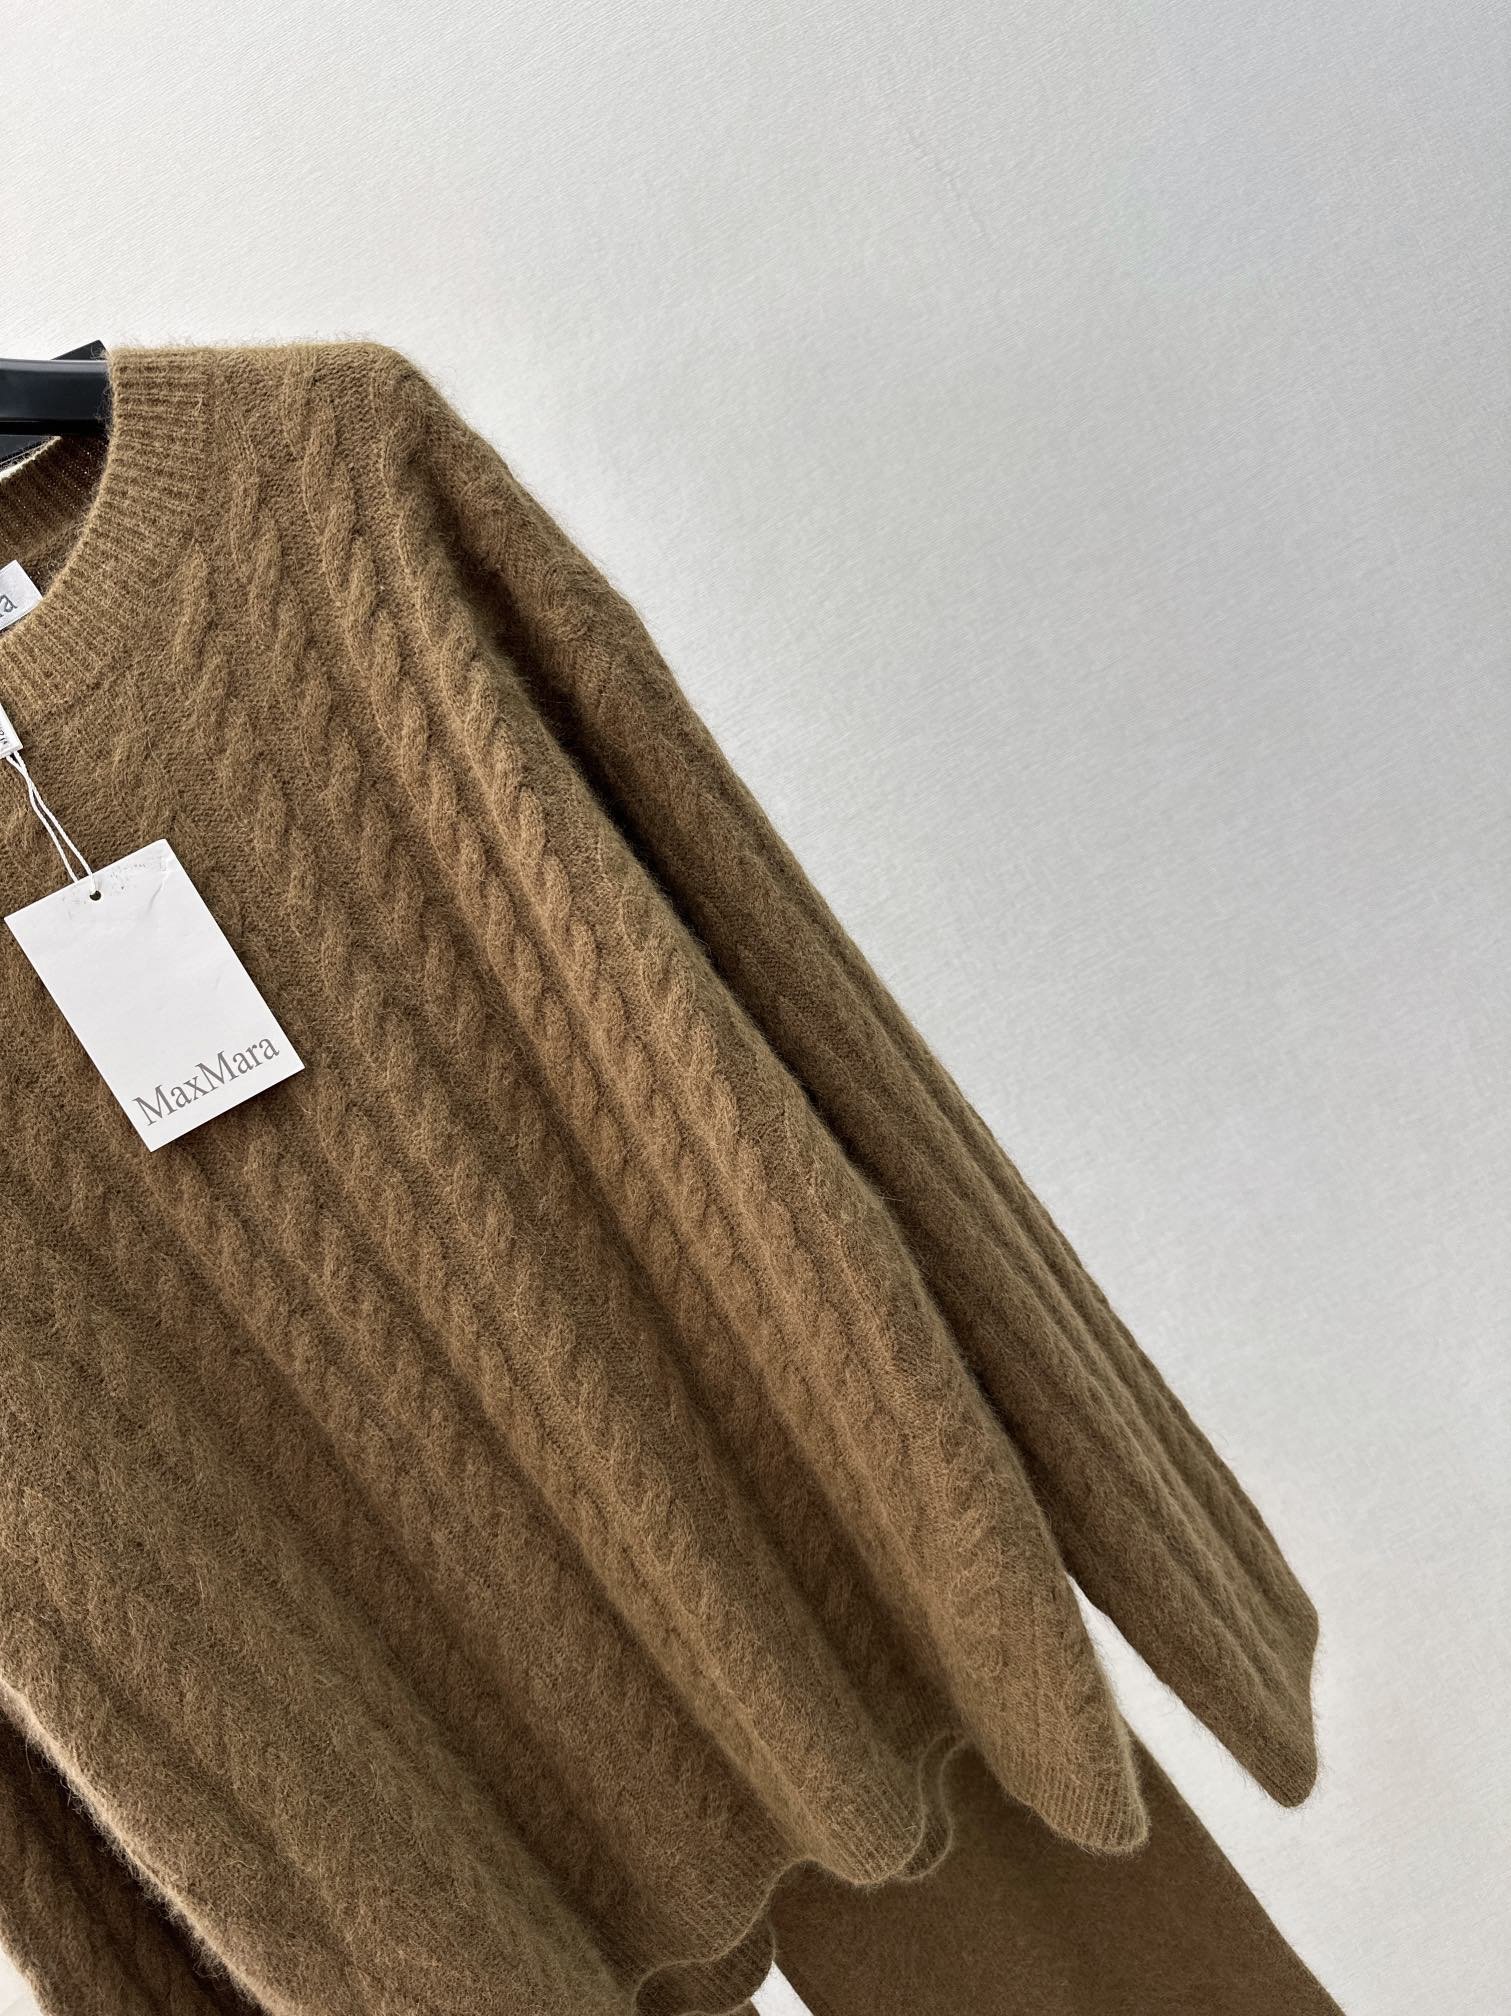 独家首发Max23Ss秋冬最新款针织套装立体麻花精仿套头针织衫+高腰直筒裤休闲时尚的一款整体给人感觉特别